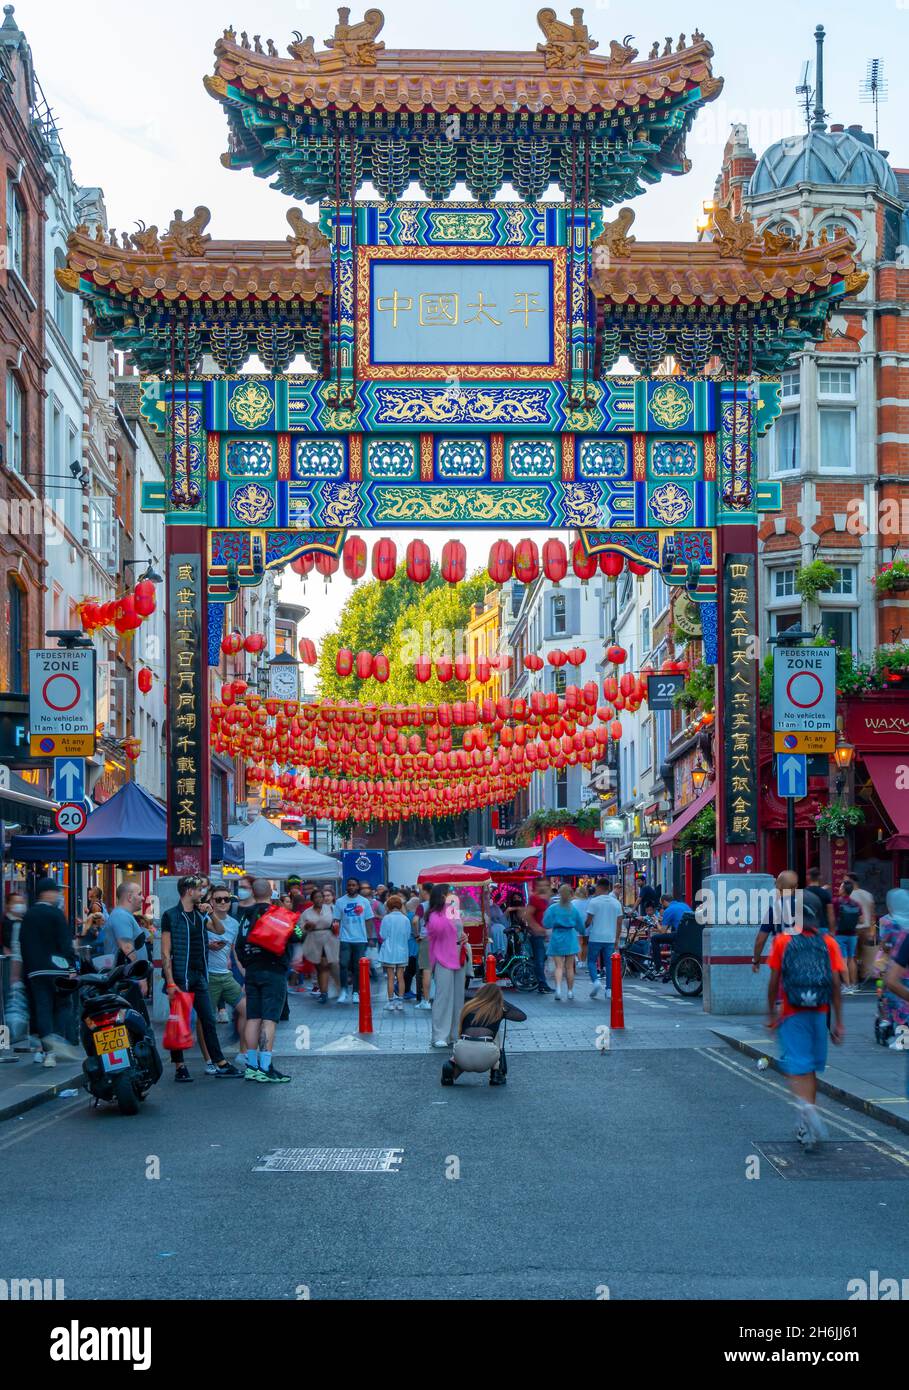 Vue sur la pittoresque Chinatown Gate dans Wardour Street, West End, Westminster, Londres, Angleterre,Royaume-Uni, Europe Banque D'Images